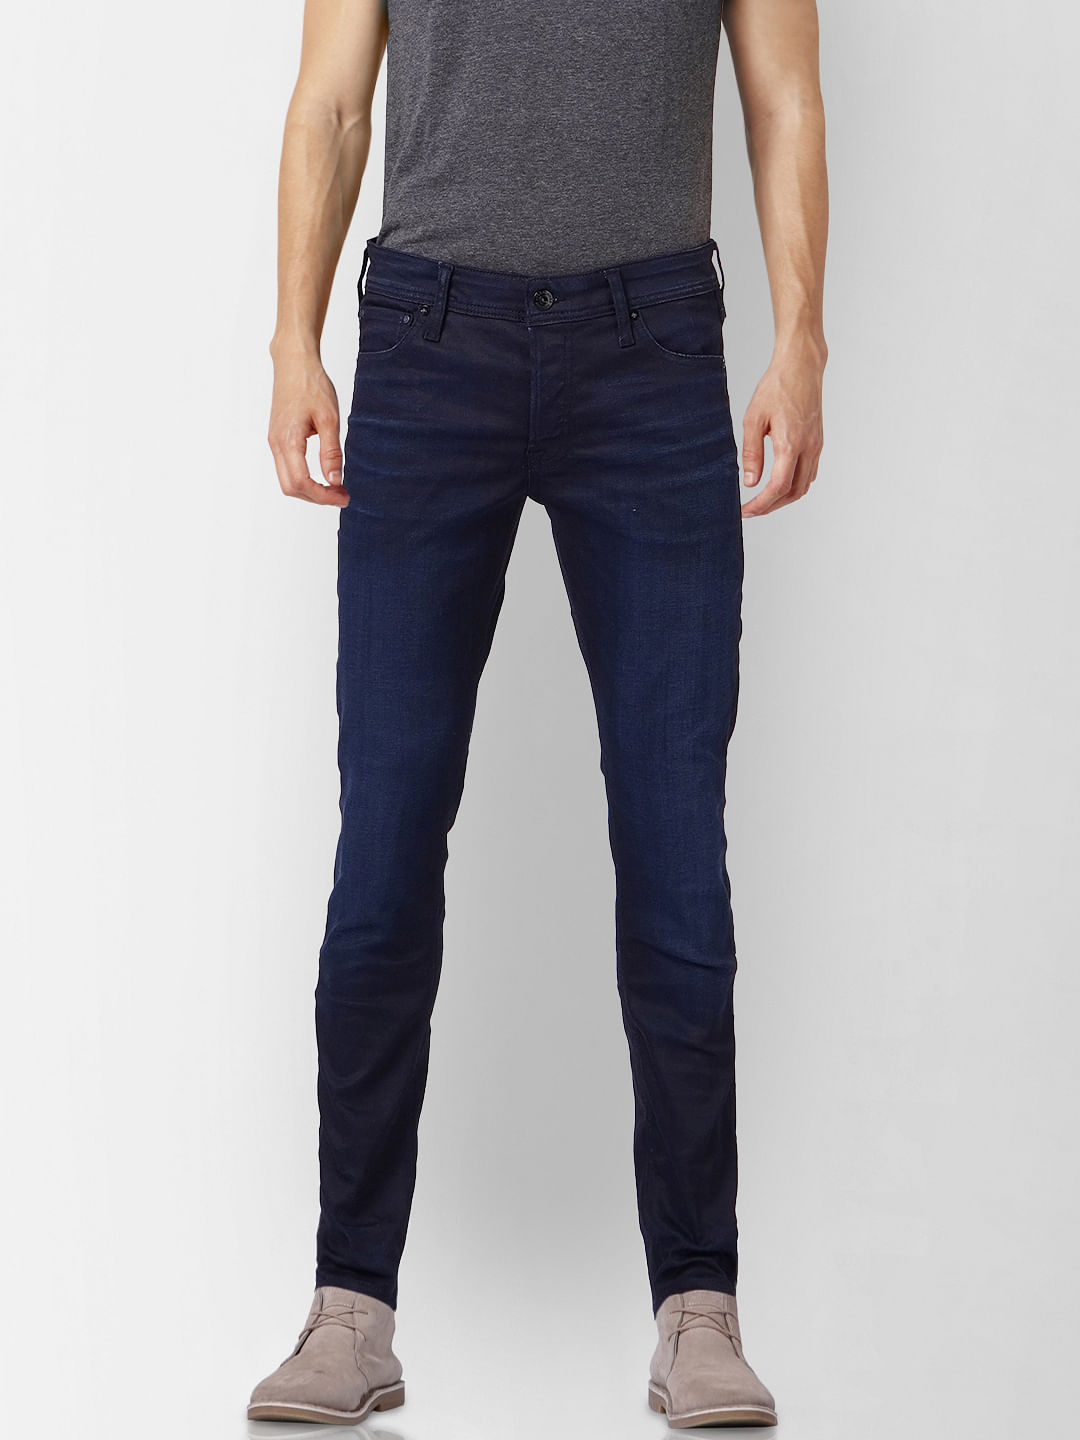 Casual Wear Plain Men Skinny Fit Denim Jeans Waist Size 3036